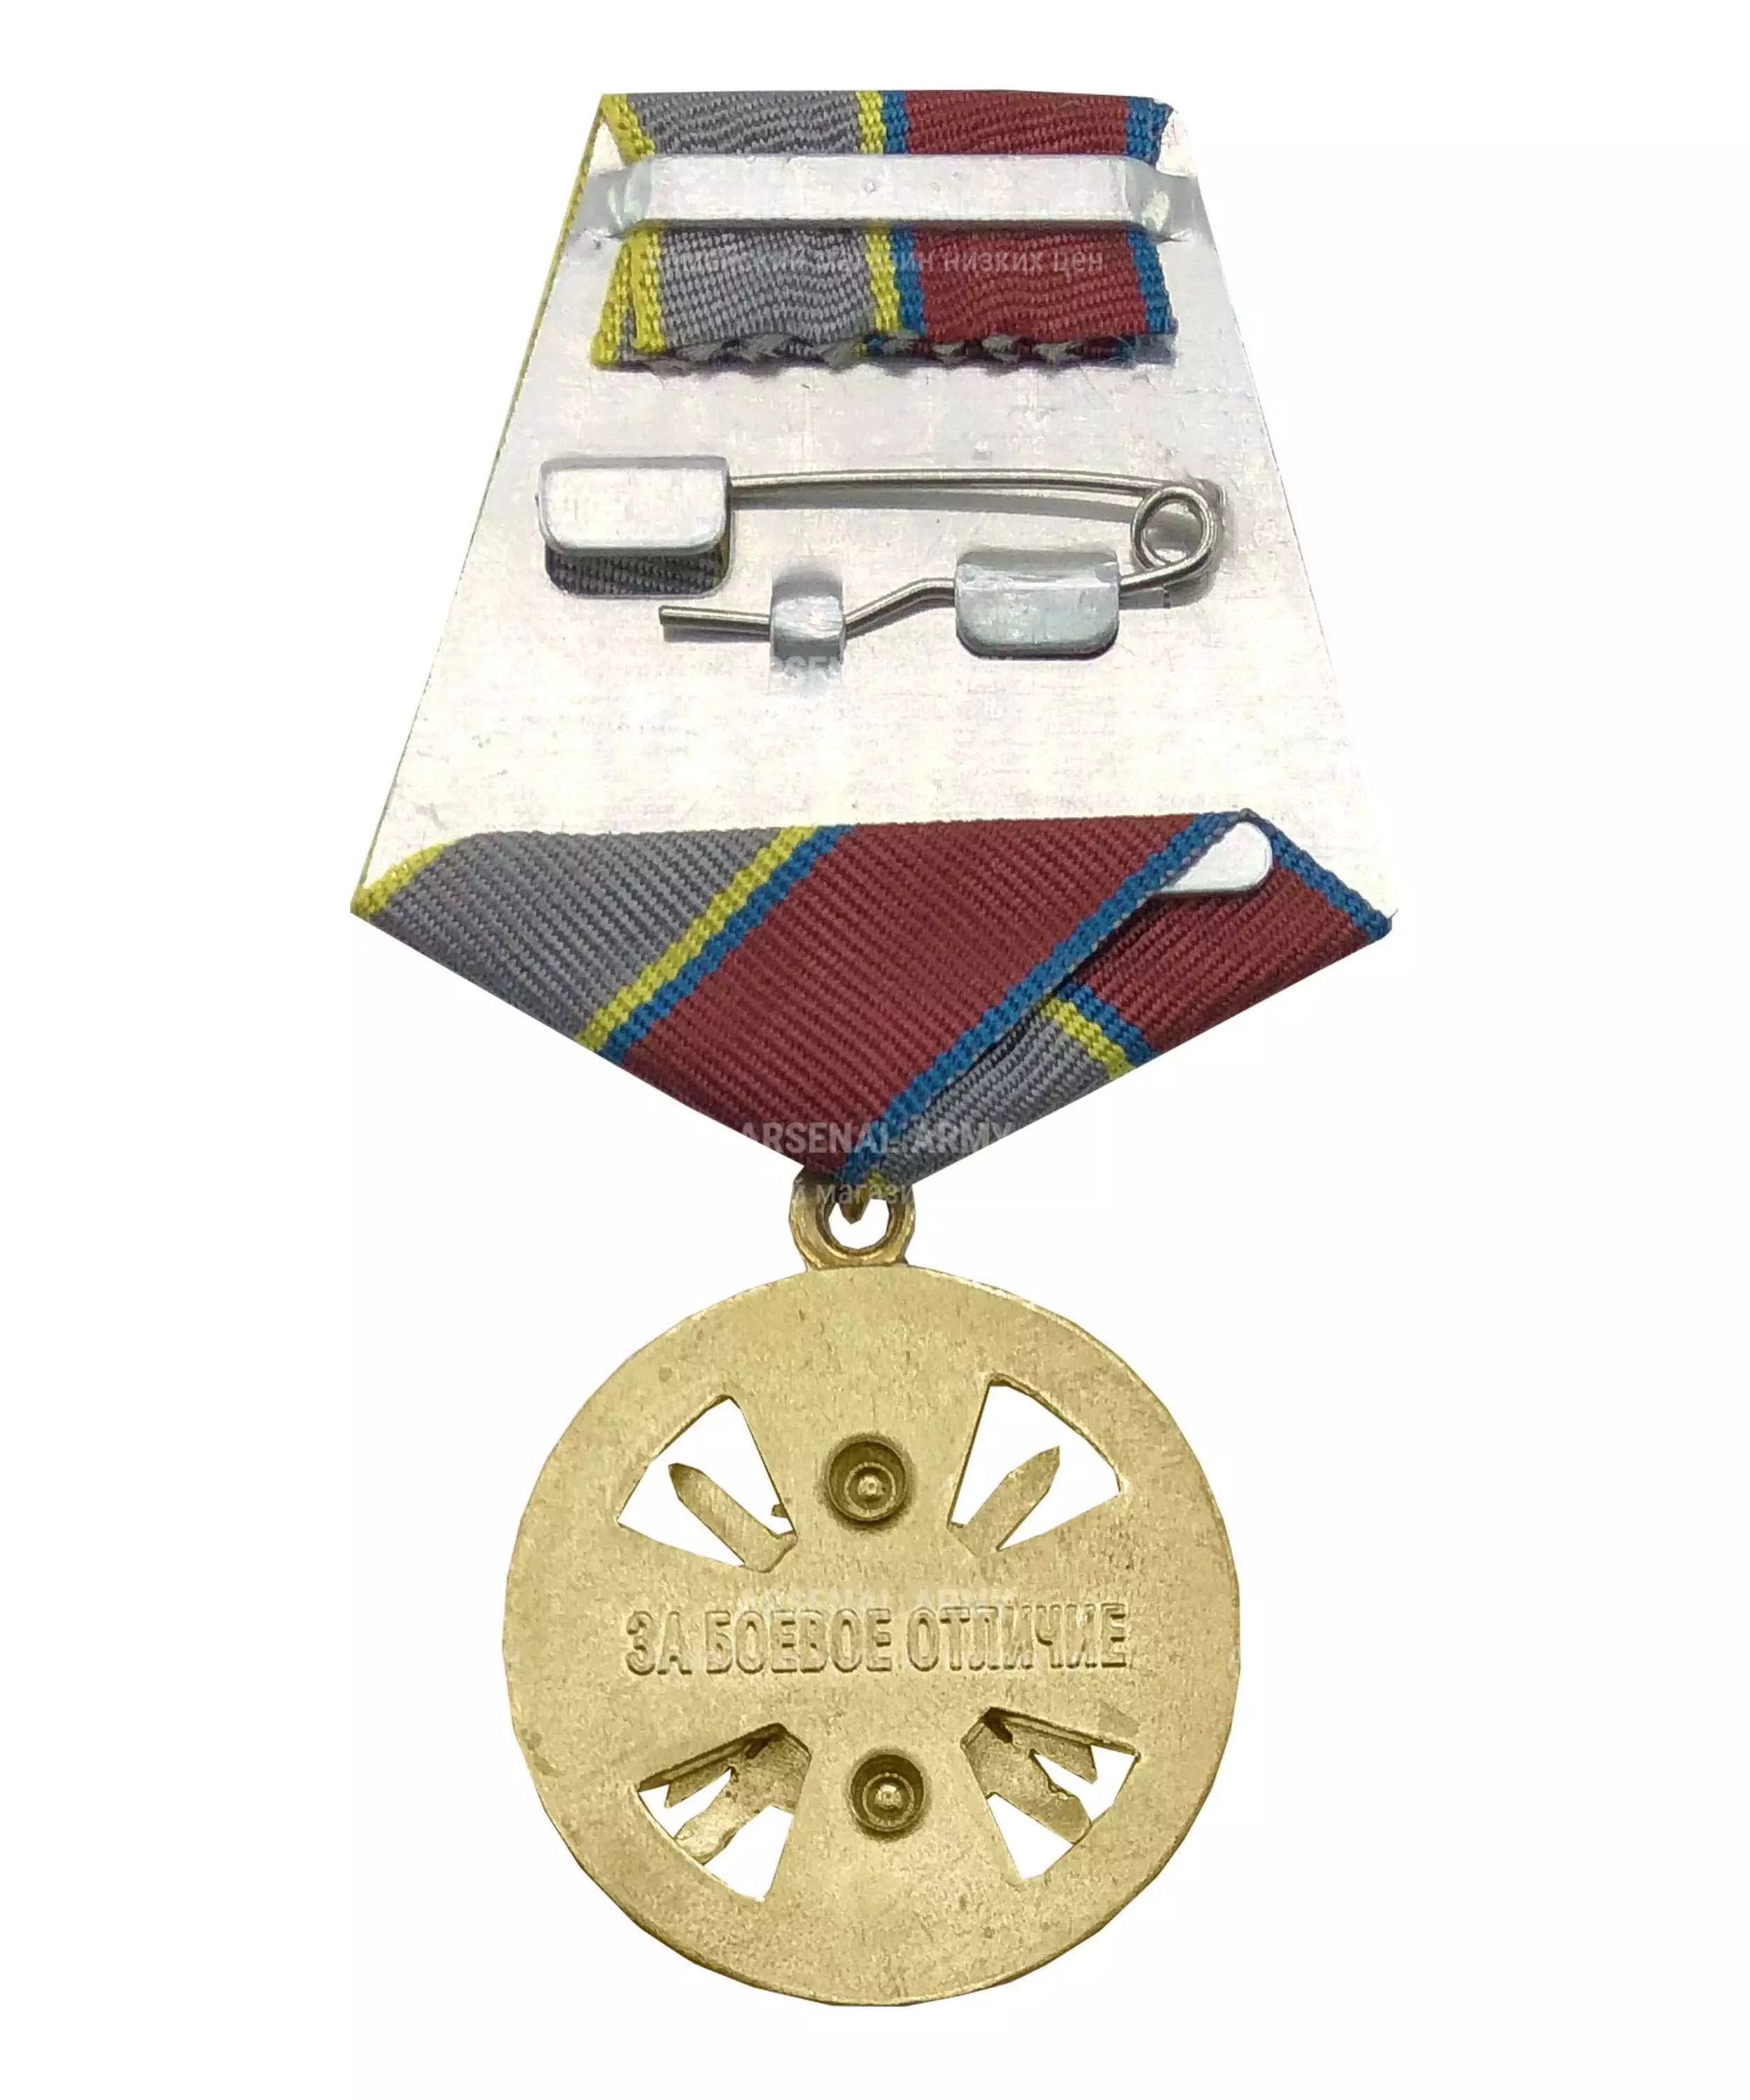 Медаль Росгвардии "За боевое отличие" — 2